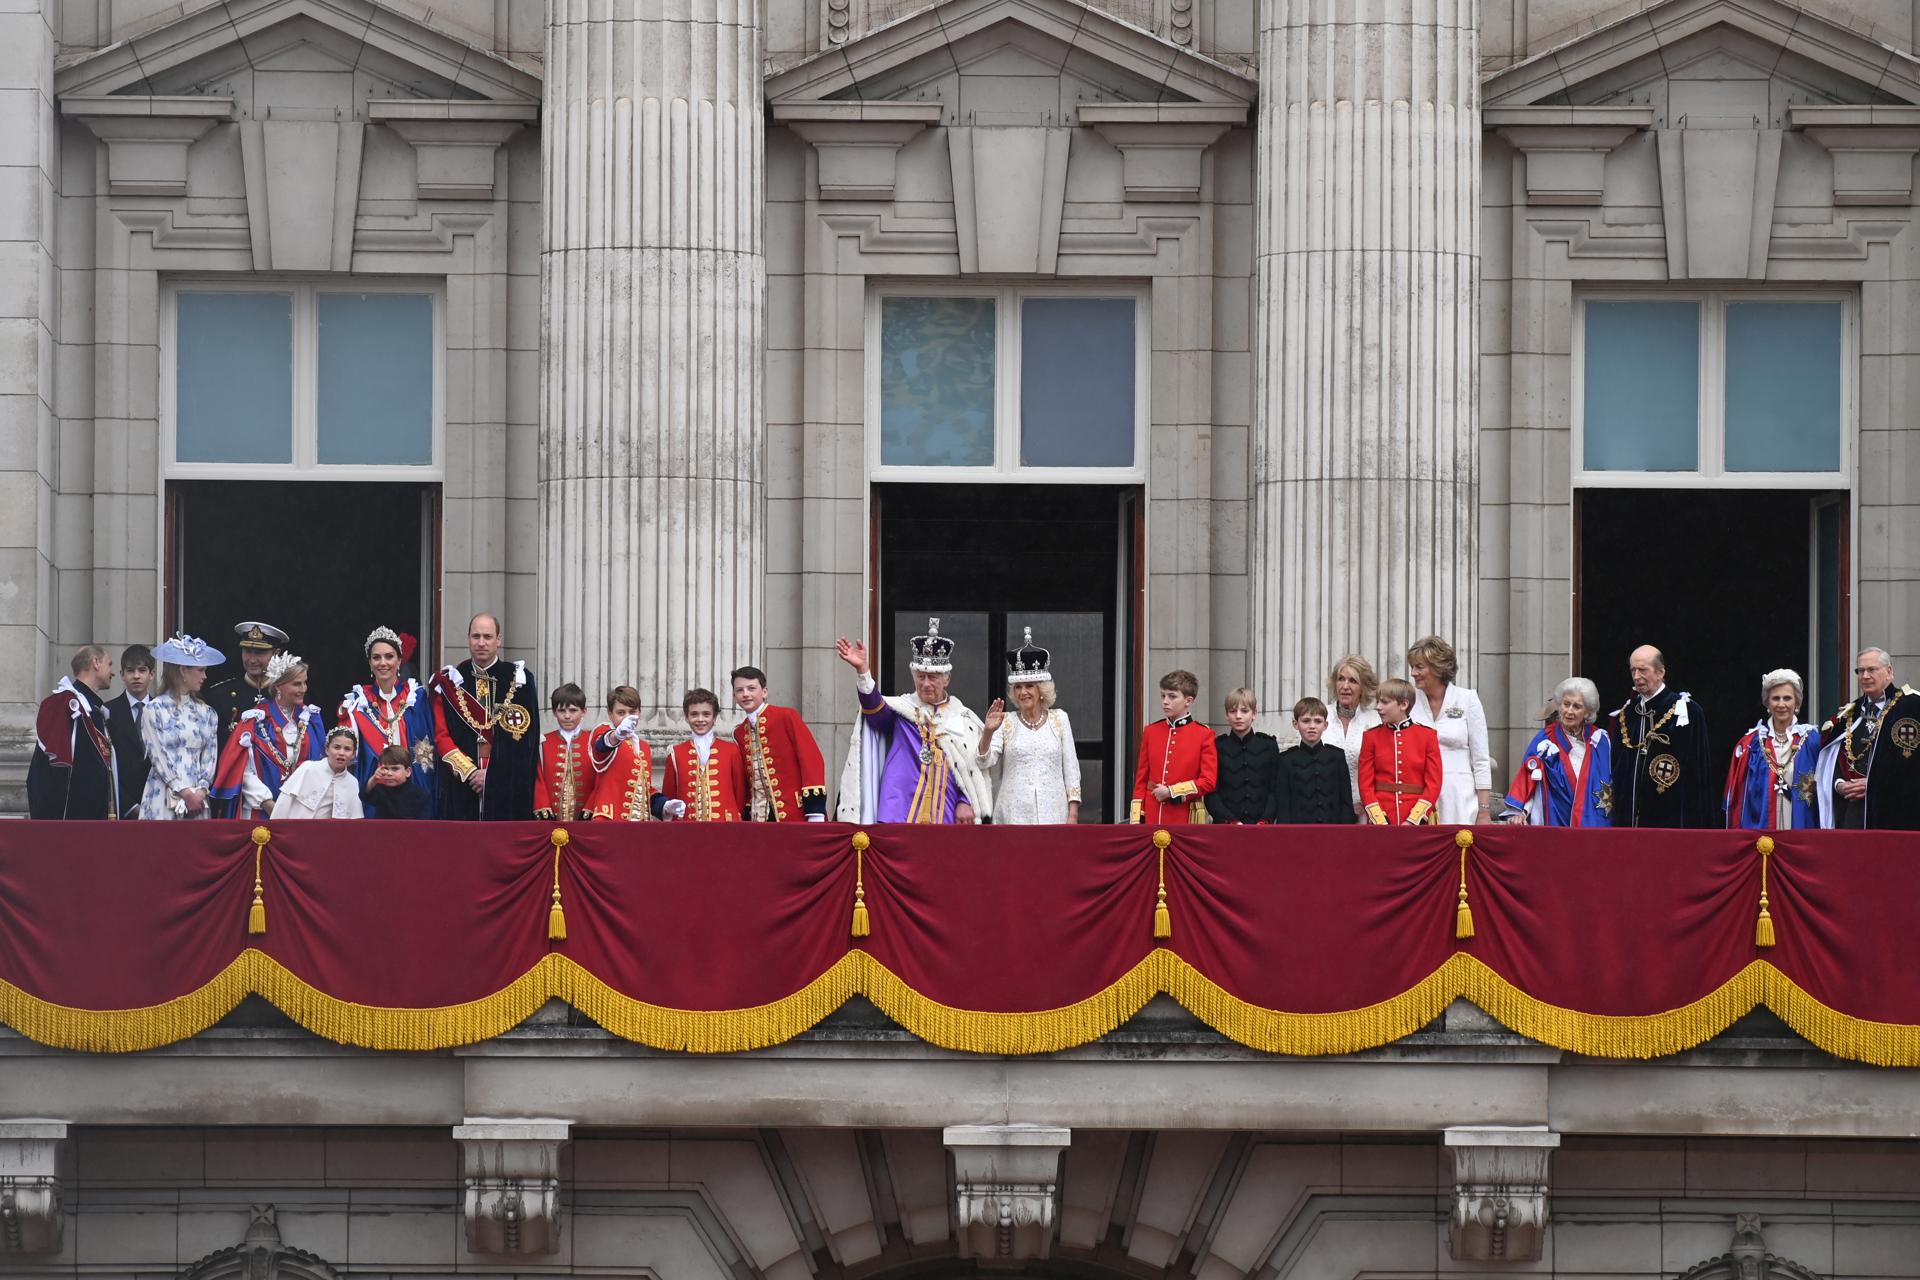 Els coronats reis Carles III i Camila, així com altres membres de la família reial, al balcó del palau de Buckingham, saluden les multituds que es van acostar dissabte passat a The Mall després de la cerimònia de coronació. EFE/ Neil Hall